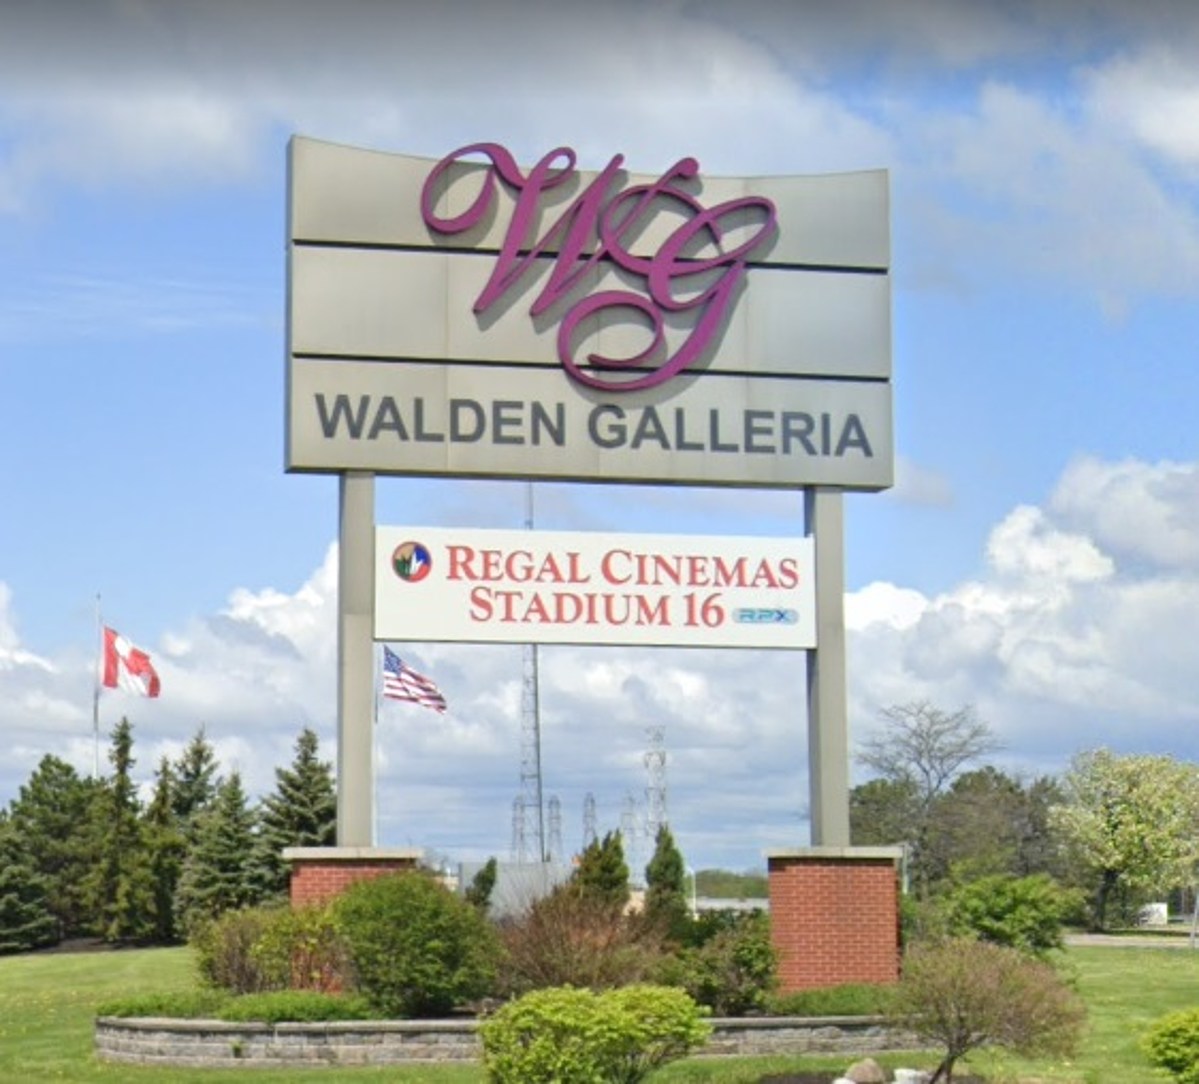 Walden Galleria Świąteczne Zakupy Ogłoszenie Świąteczne